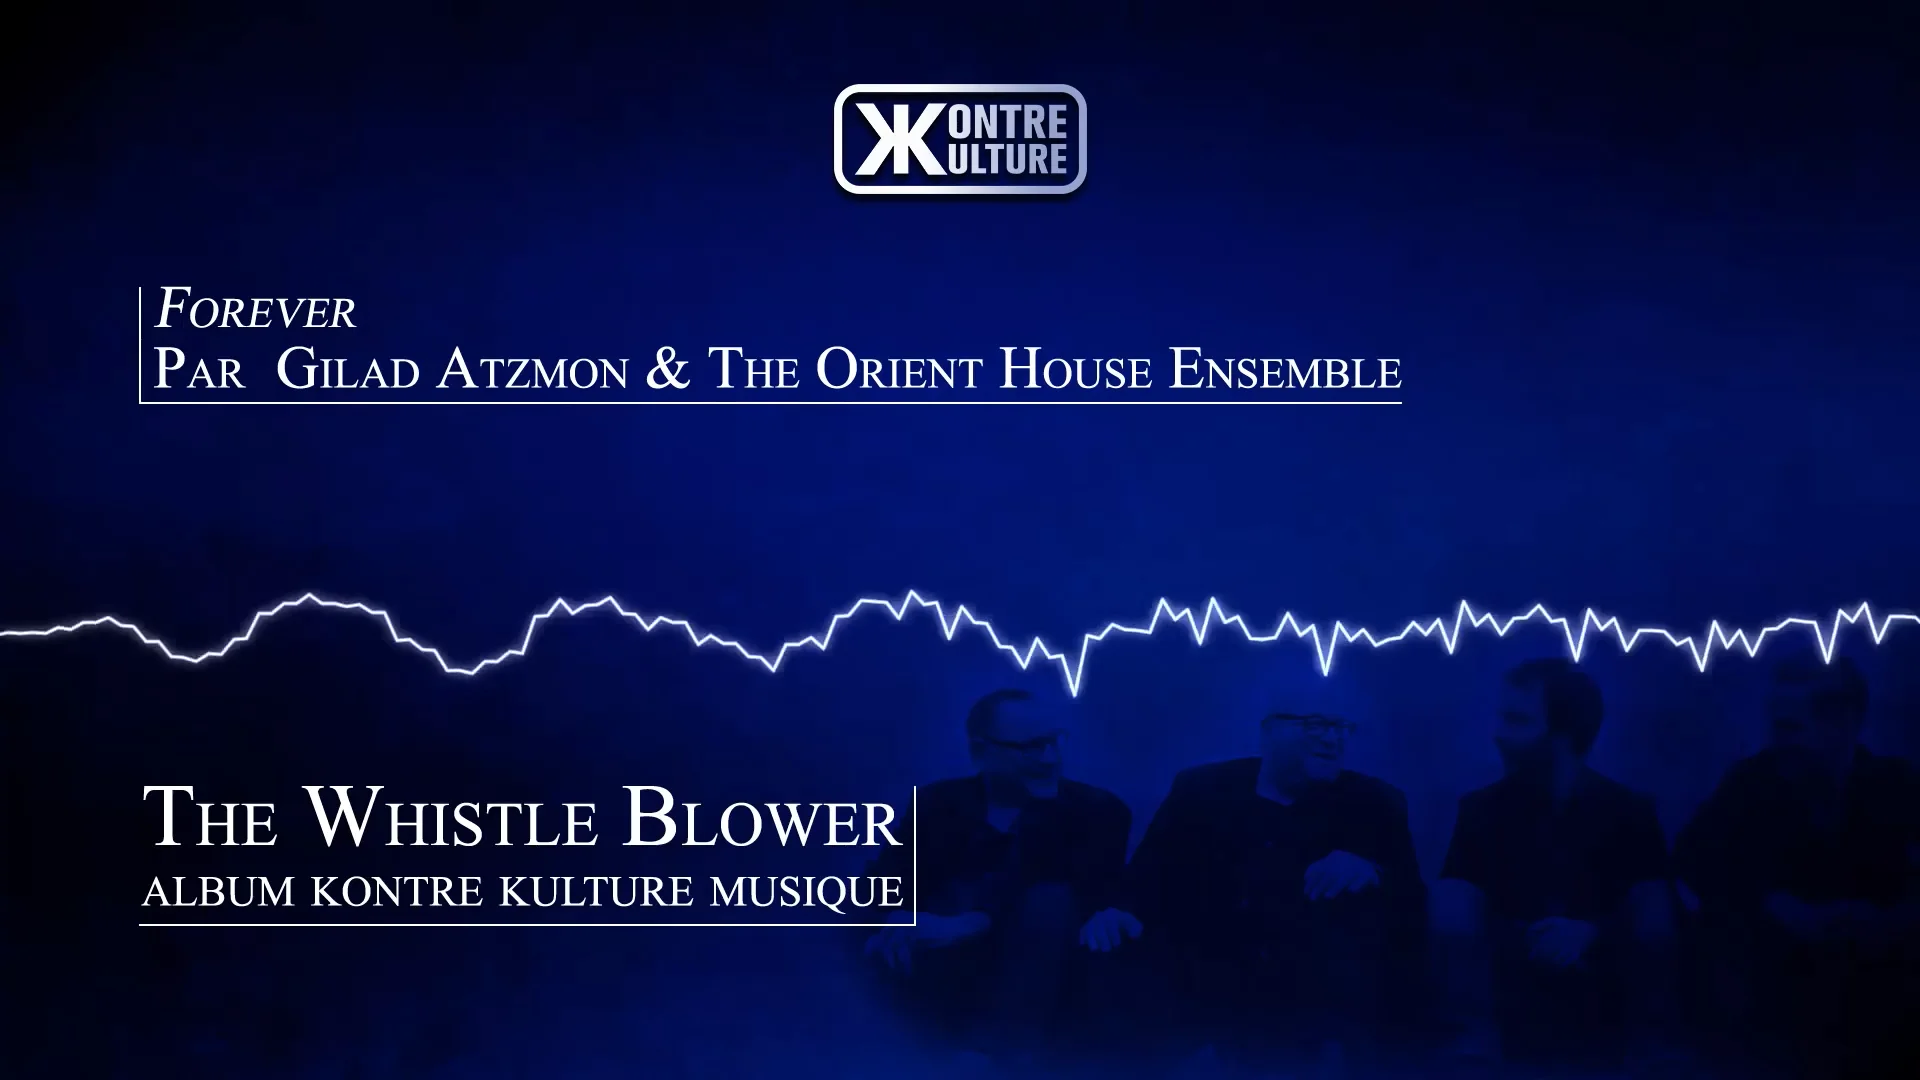 Kontre Kulture présente Forever de Gilad Atzmon and the Orient House Ensemble